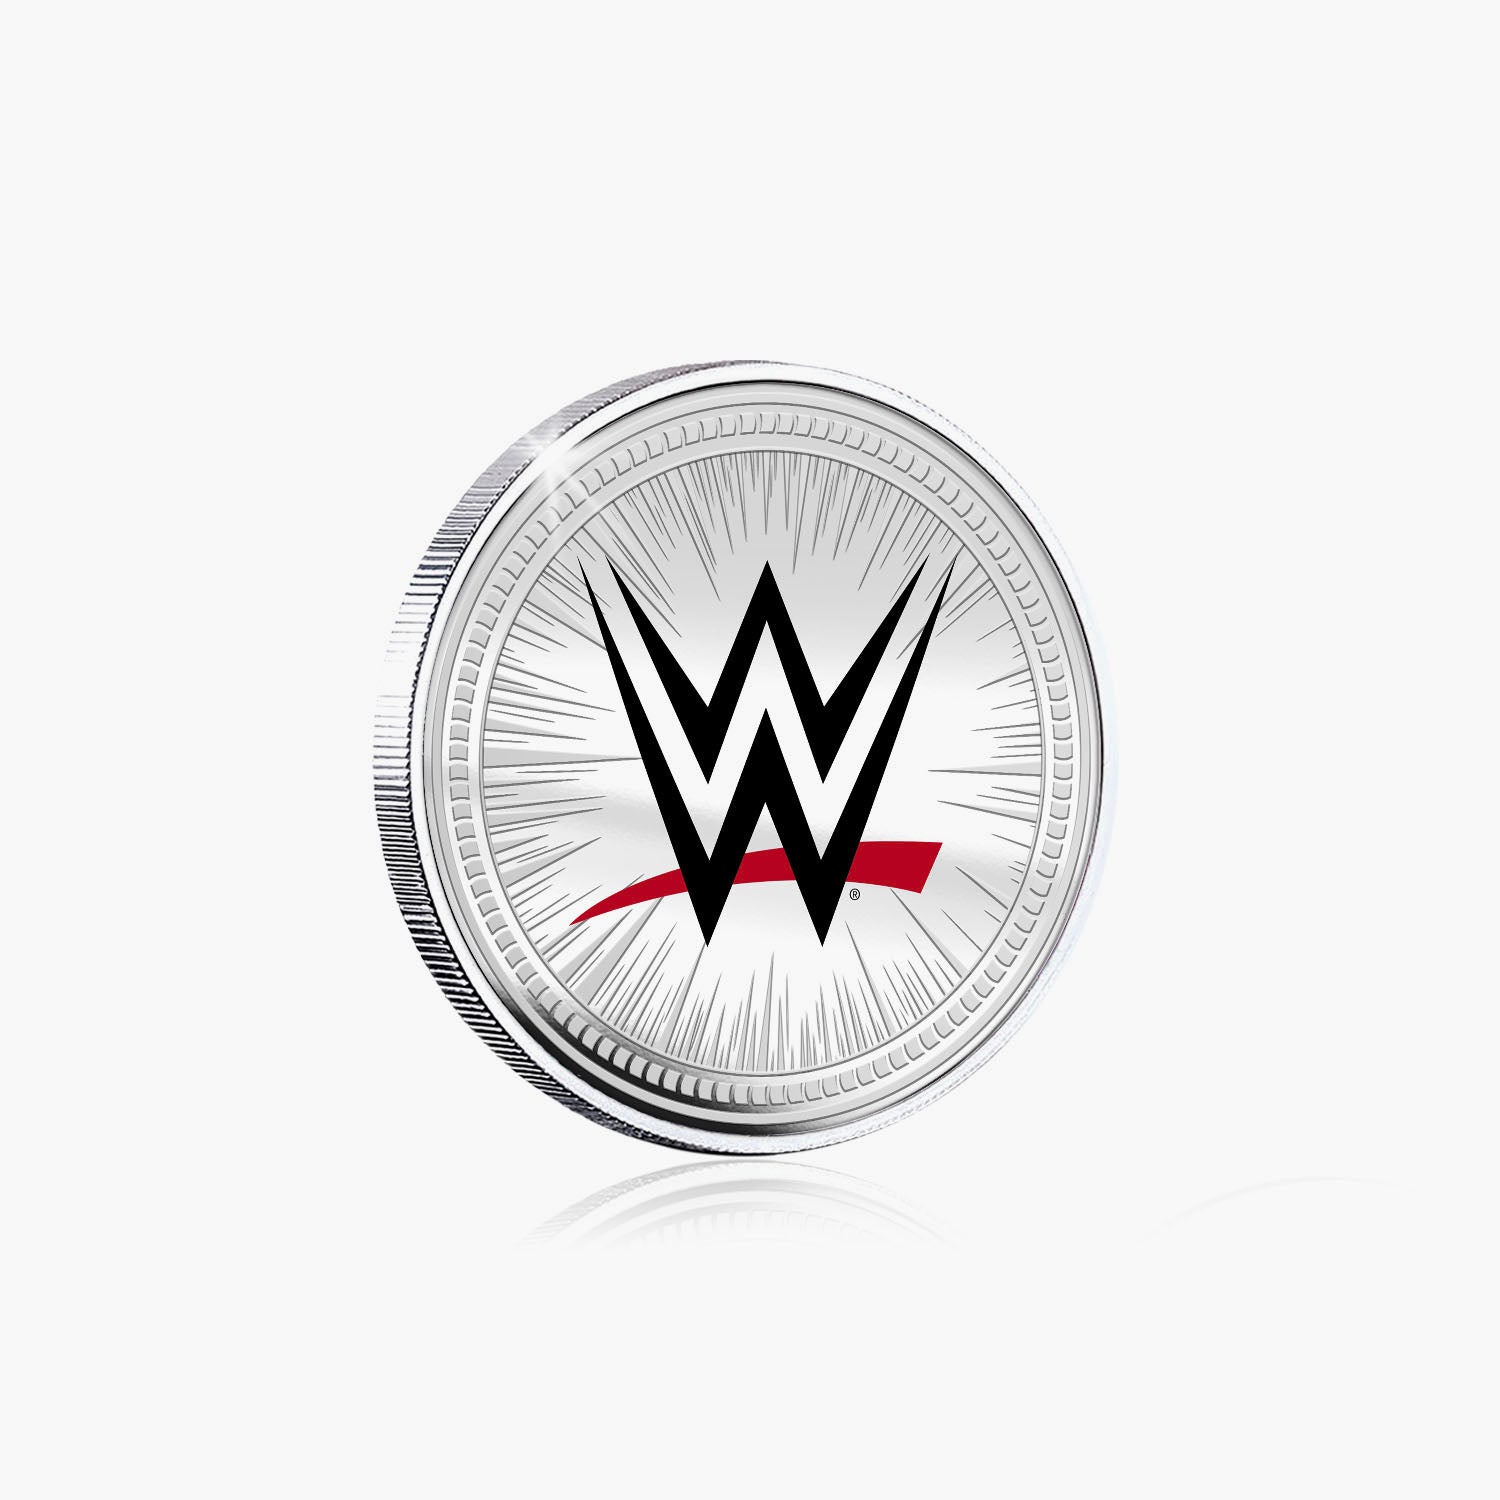 Collection commémorative WWE - Kevin Nash - Commémorative plaquée argent 32 mm